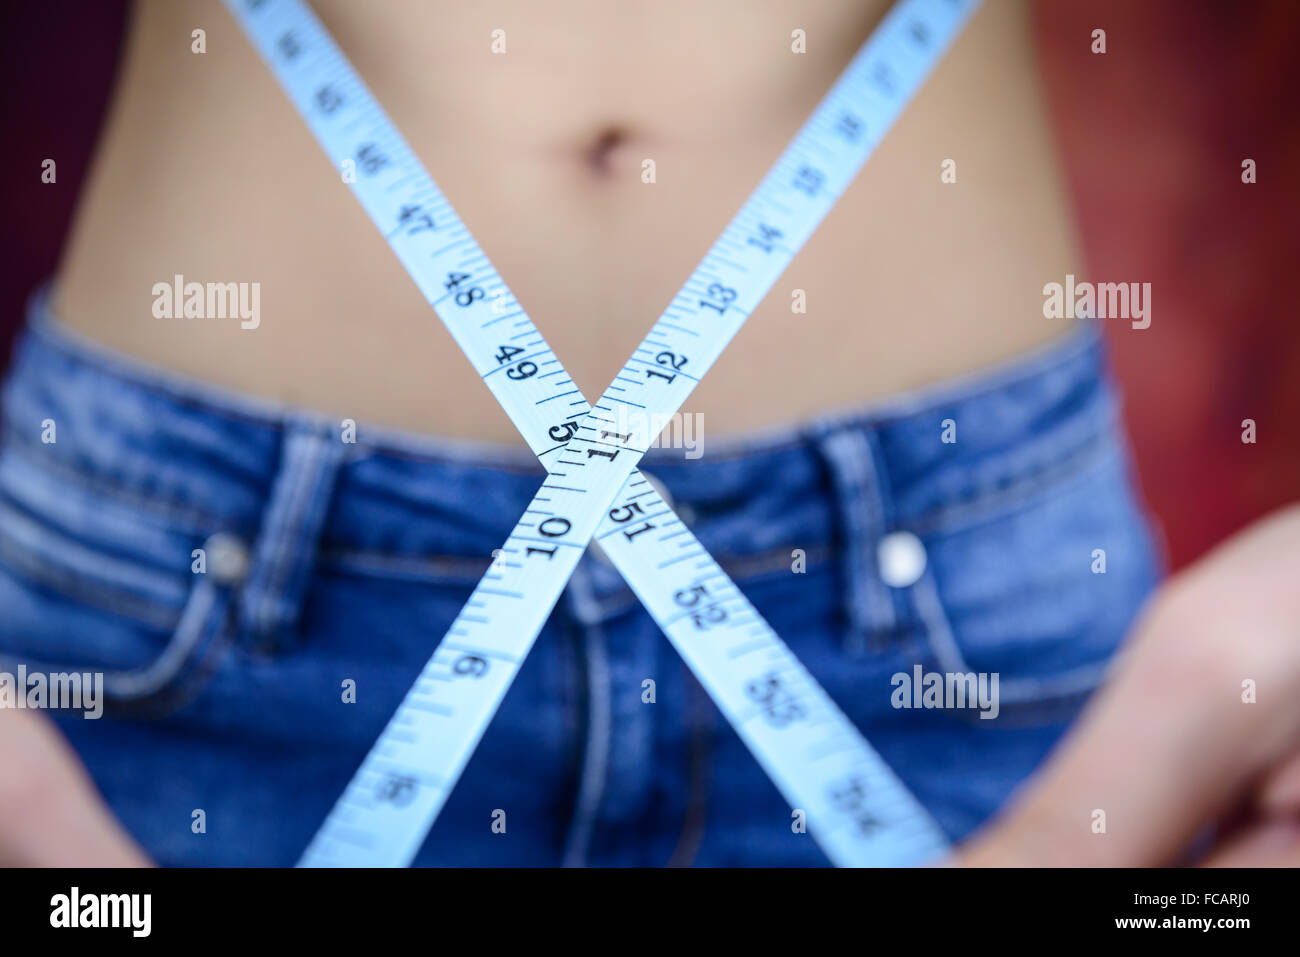 Slim donna asiatica , indossano jeans, misurando la sua forma del corpo, alla cintura, glutei Foto Stock